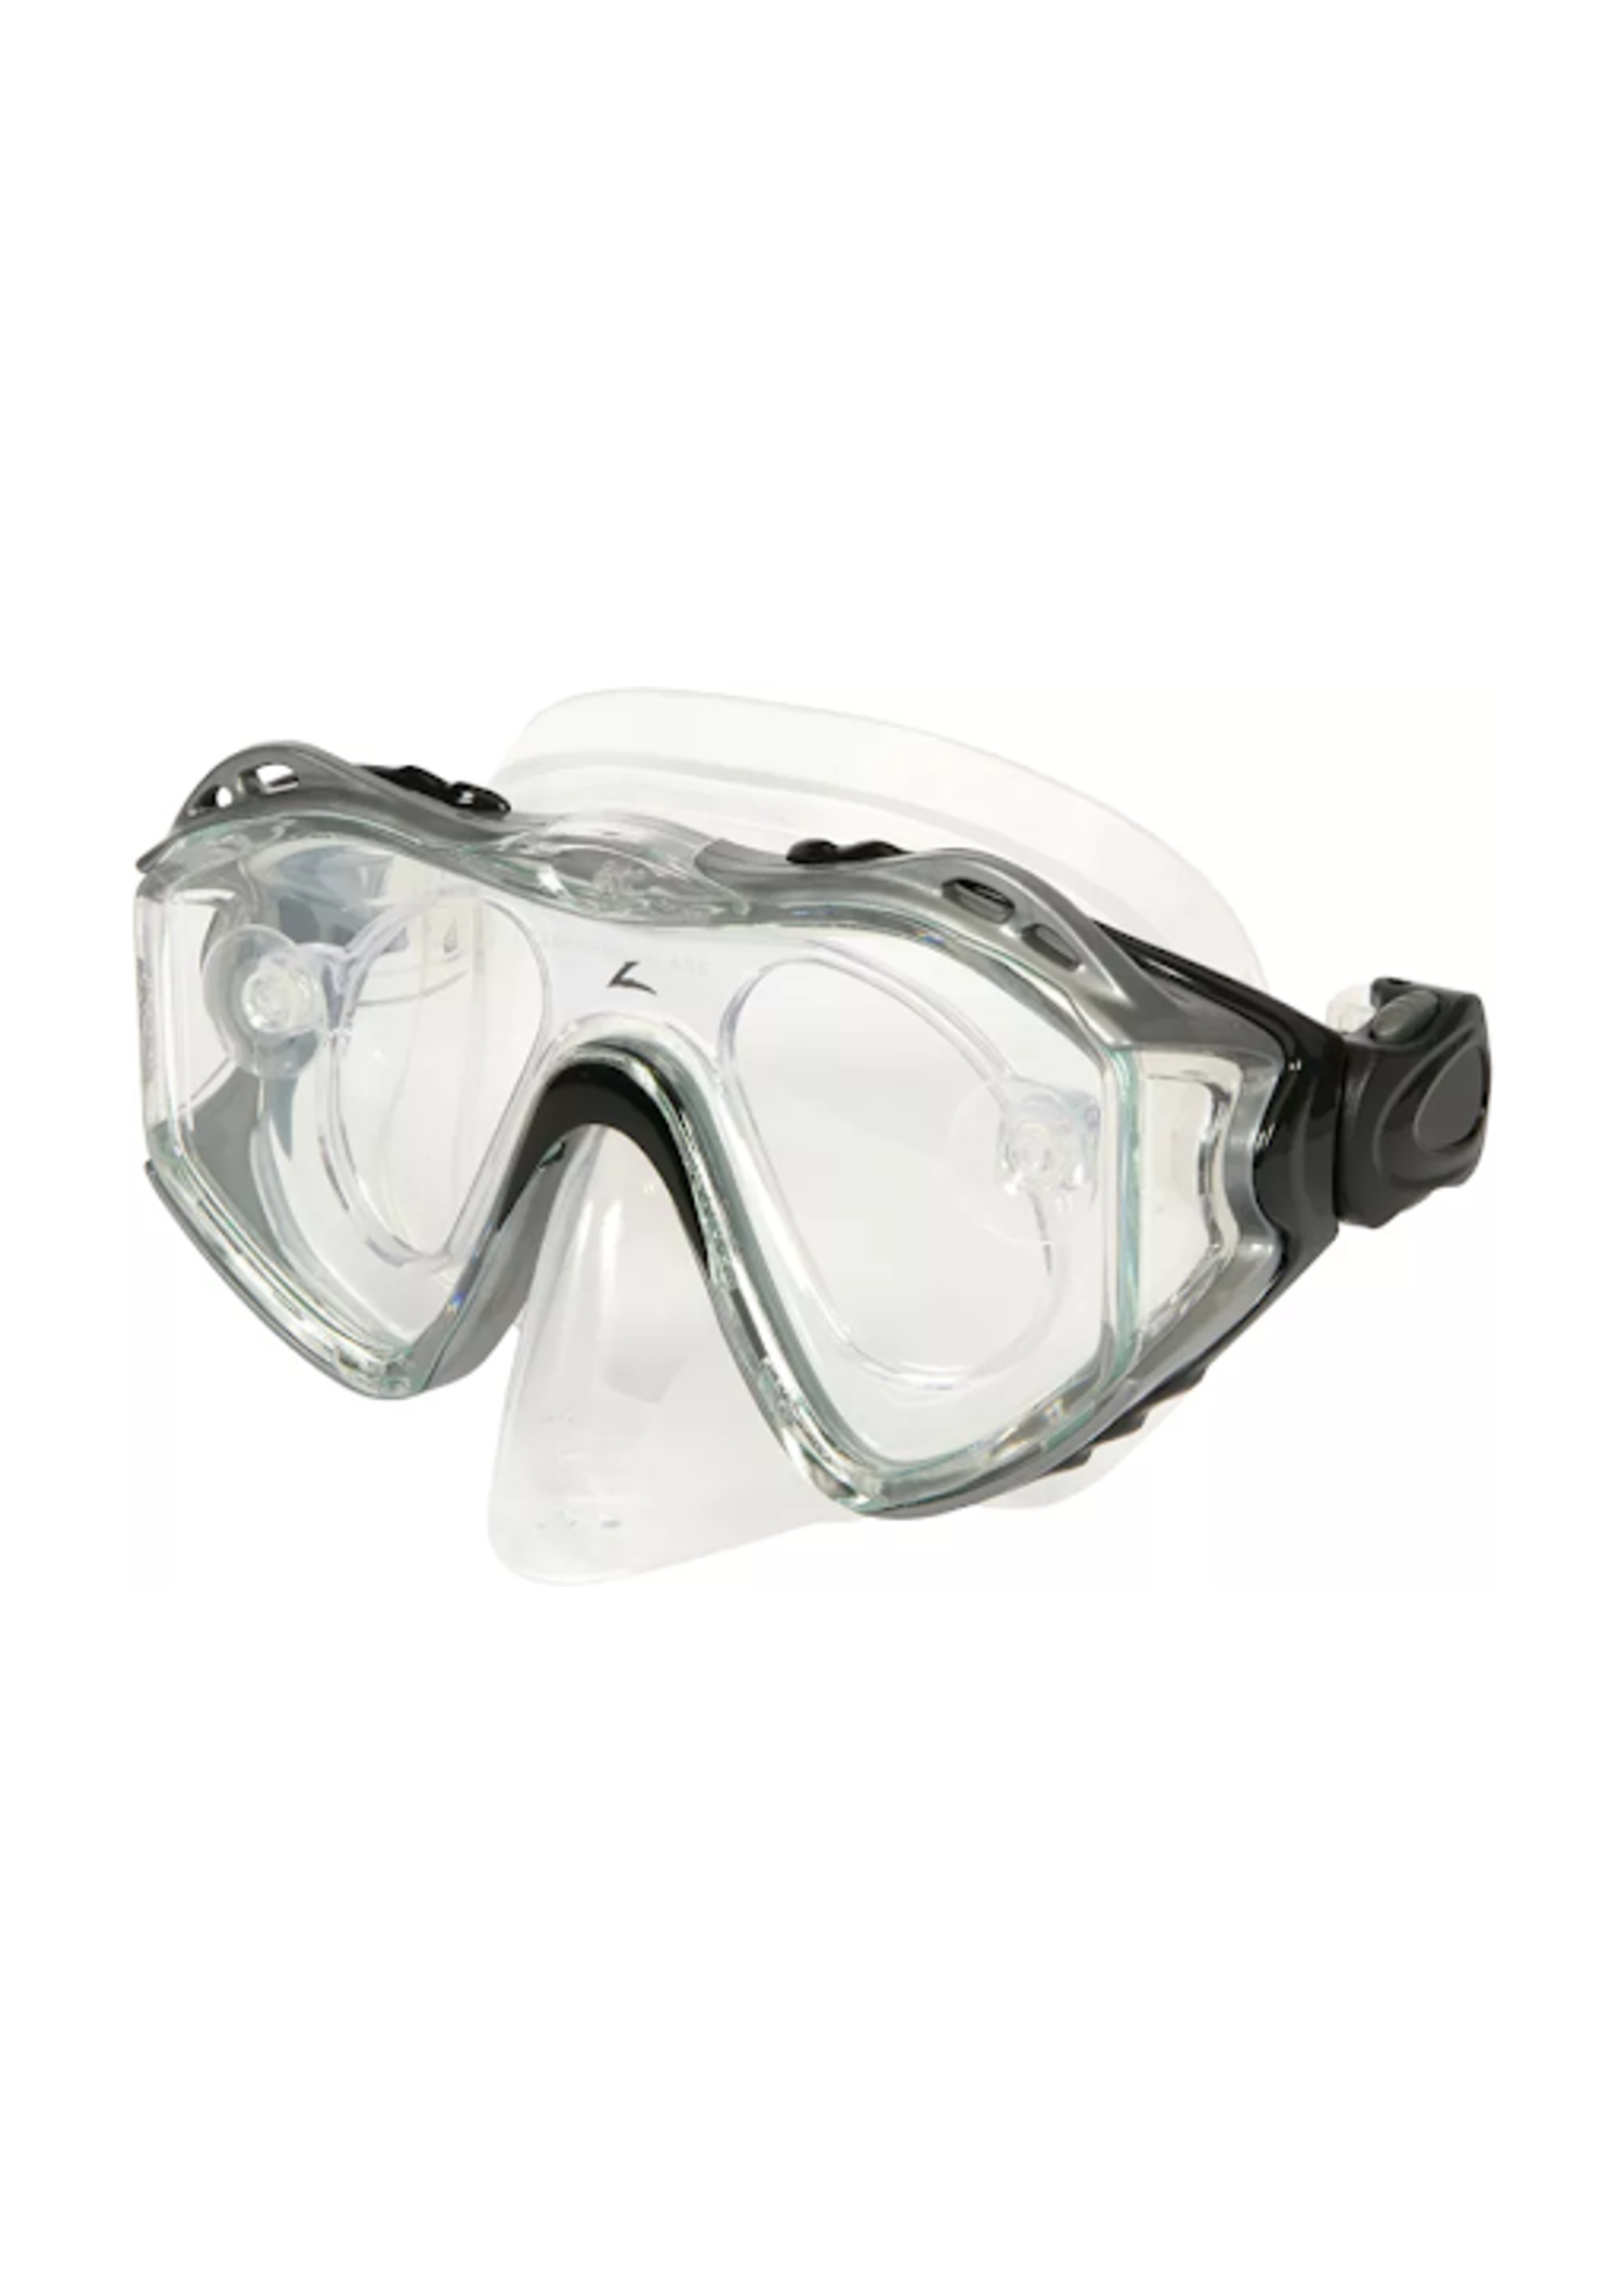 Diving Mask Custom Rx Single Vision Adult Dive Mask